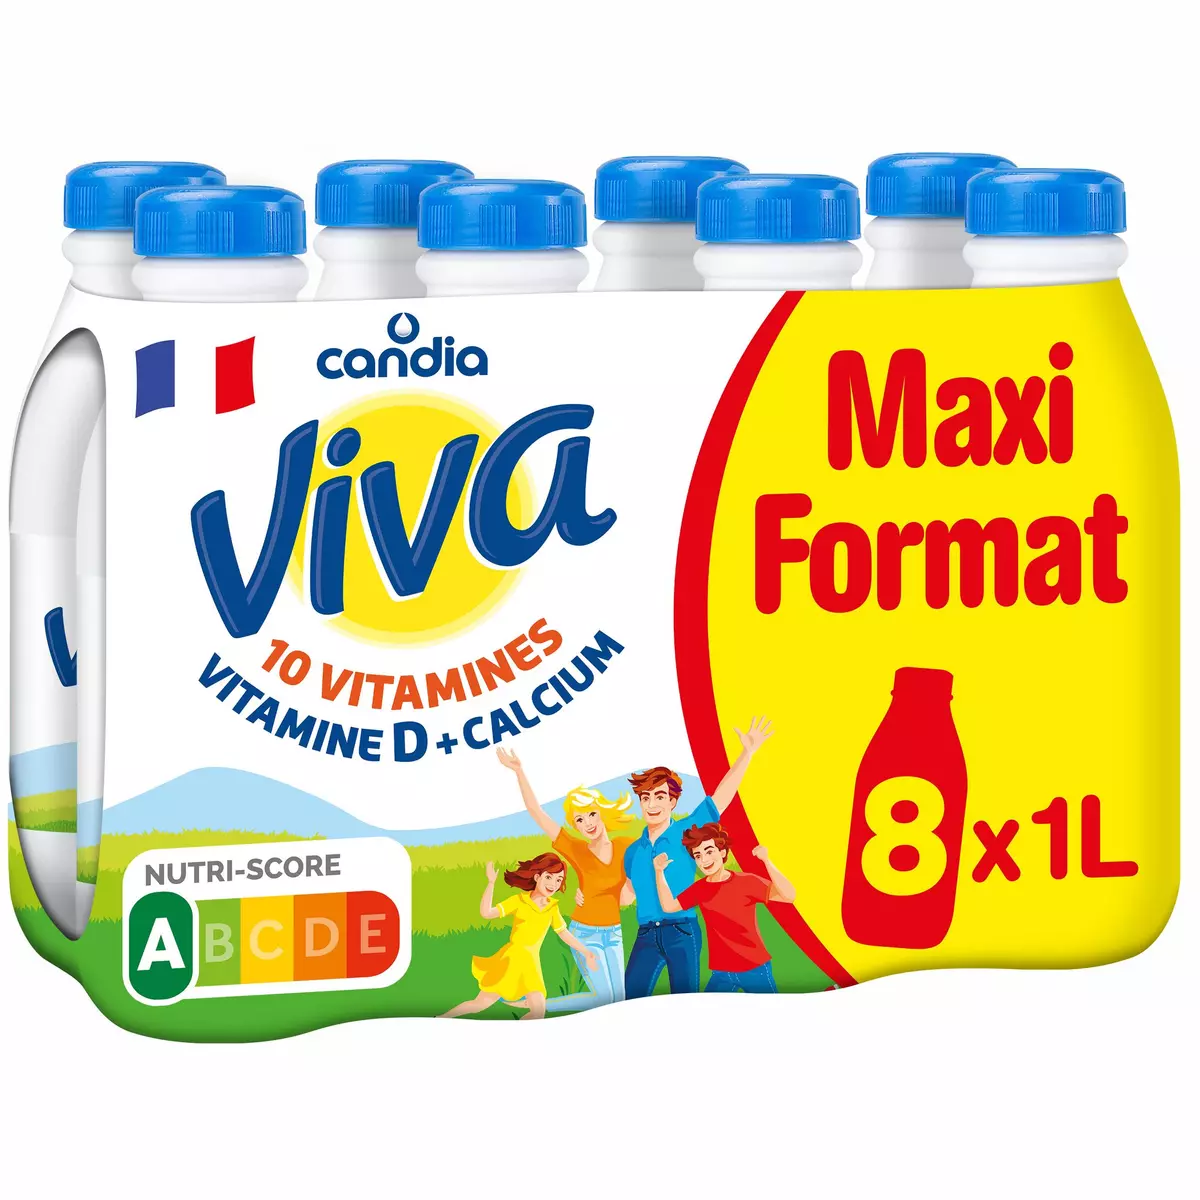 CANDIA Viva Lait demi-écrémé UHT 10 vitamines 8x1l